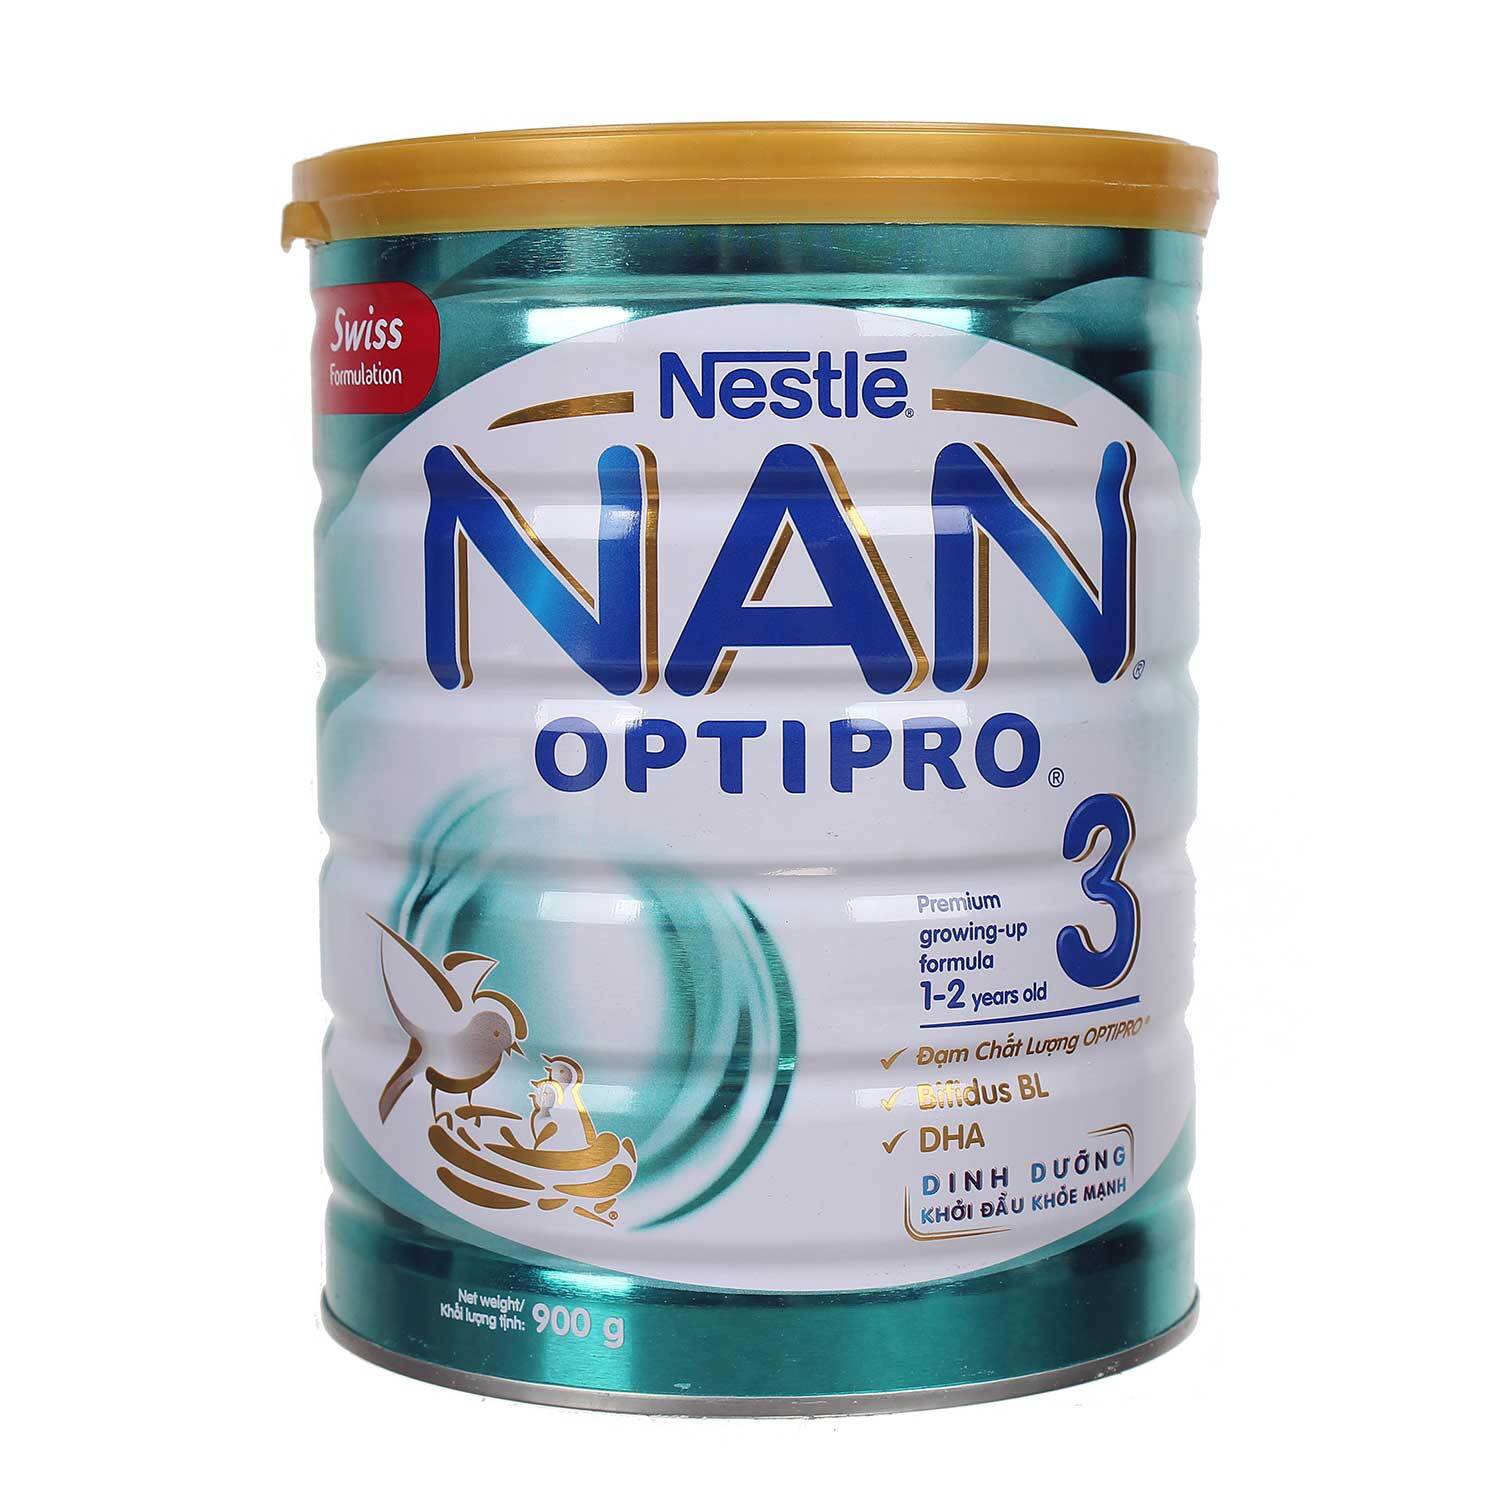 Sữa Nestle Nan Optipro 3 dễ tiêu hóa tăng cân tốt